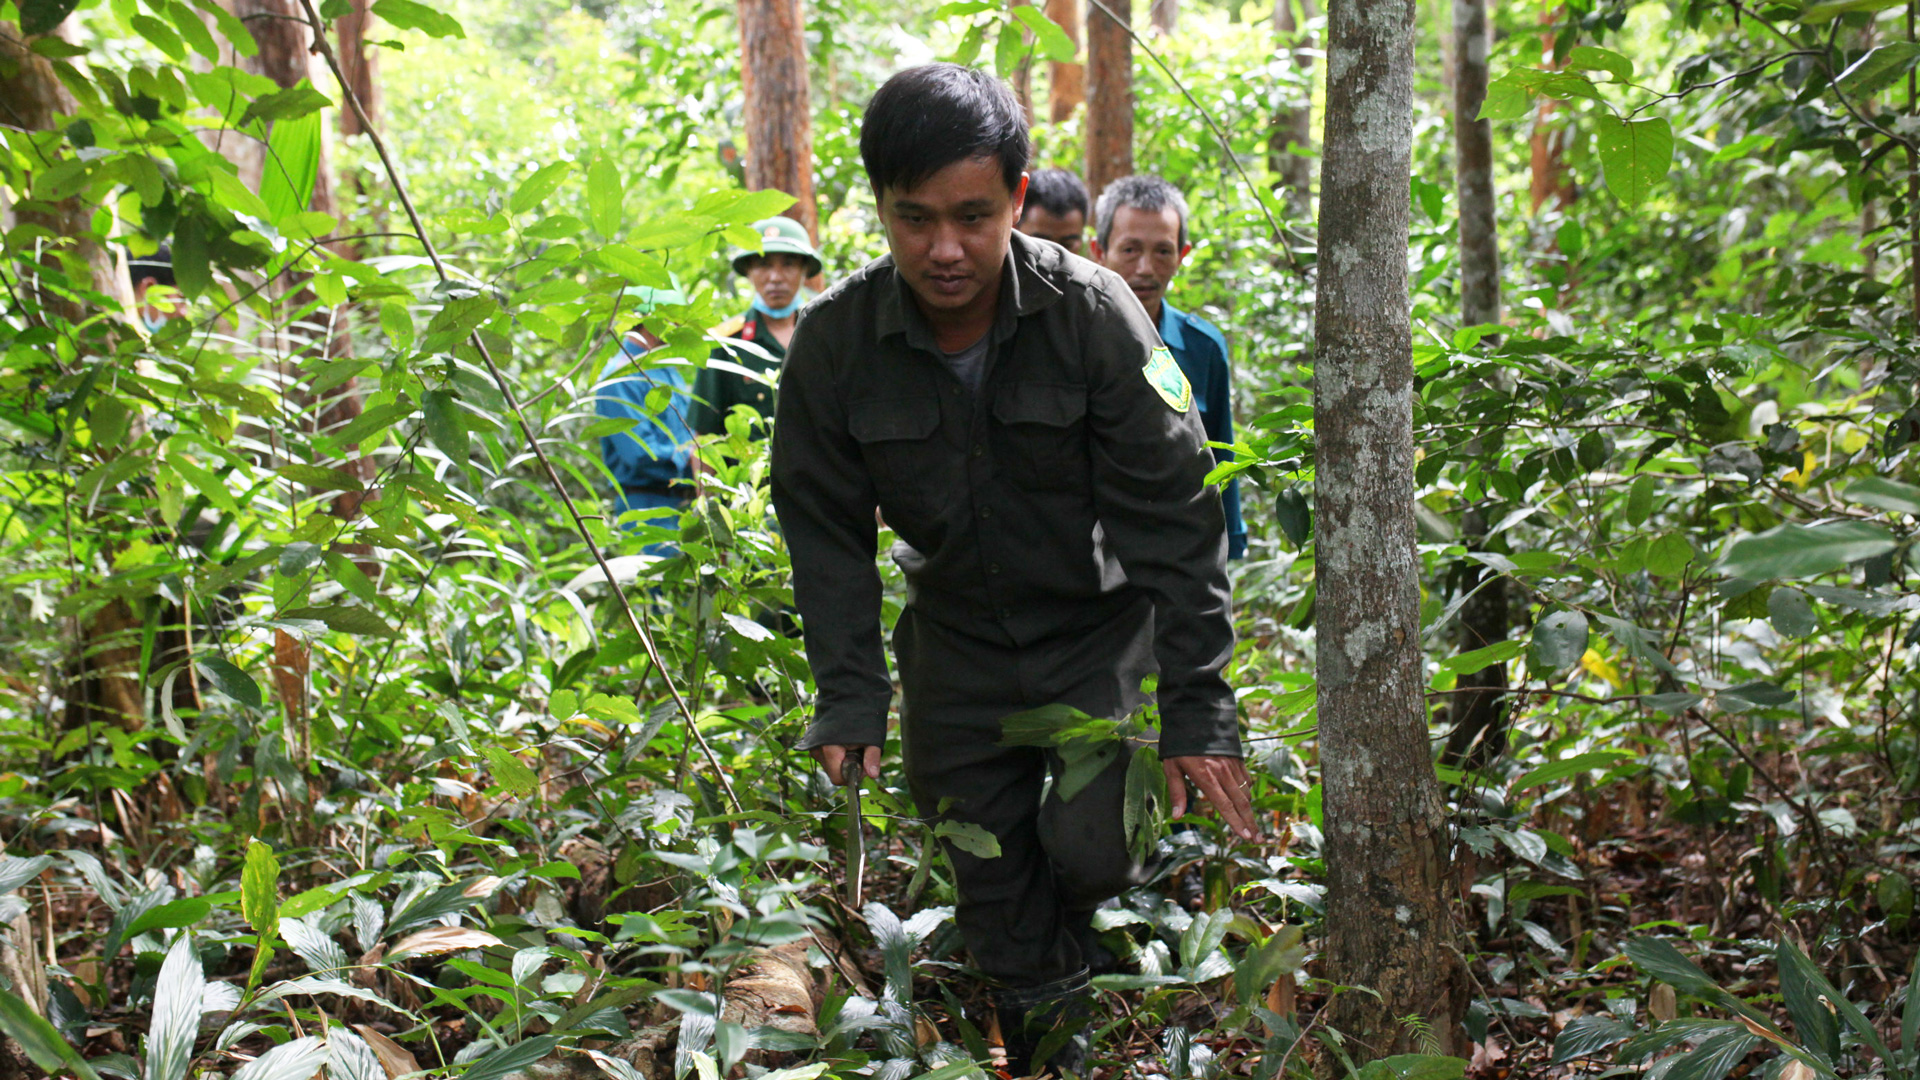 Ðạ Tẻh: Nhiều chuyển biến tích cực trong công tác quản lý, bảo vệ rừng